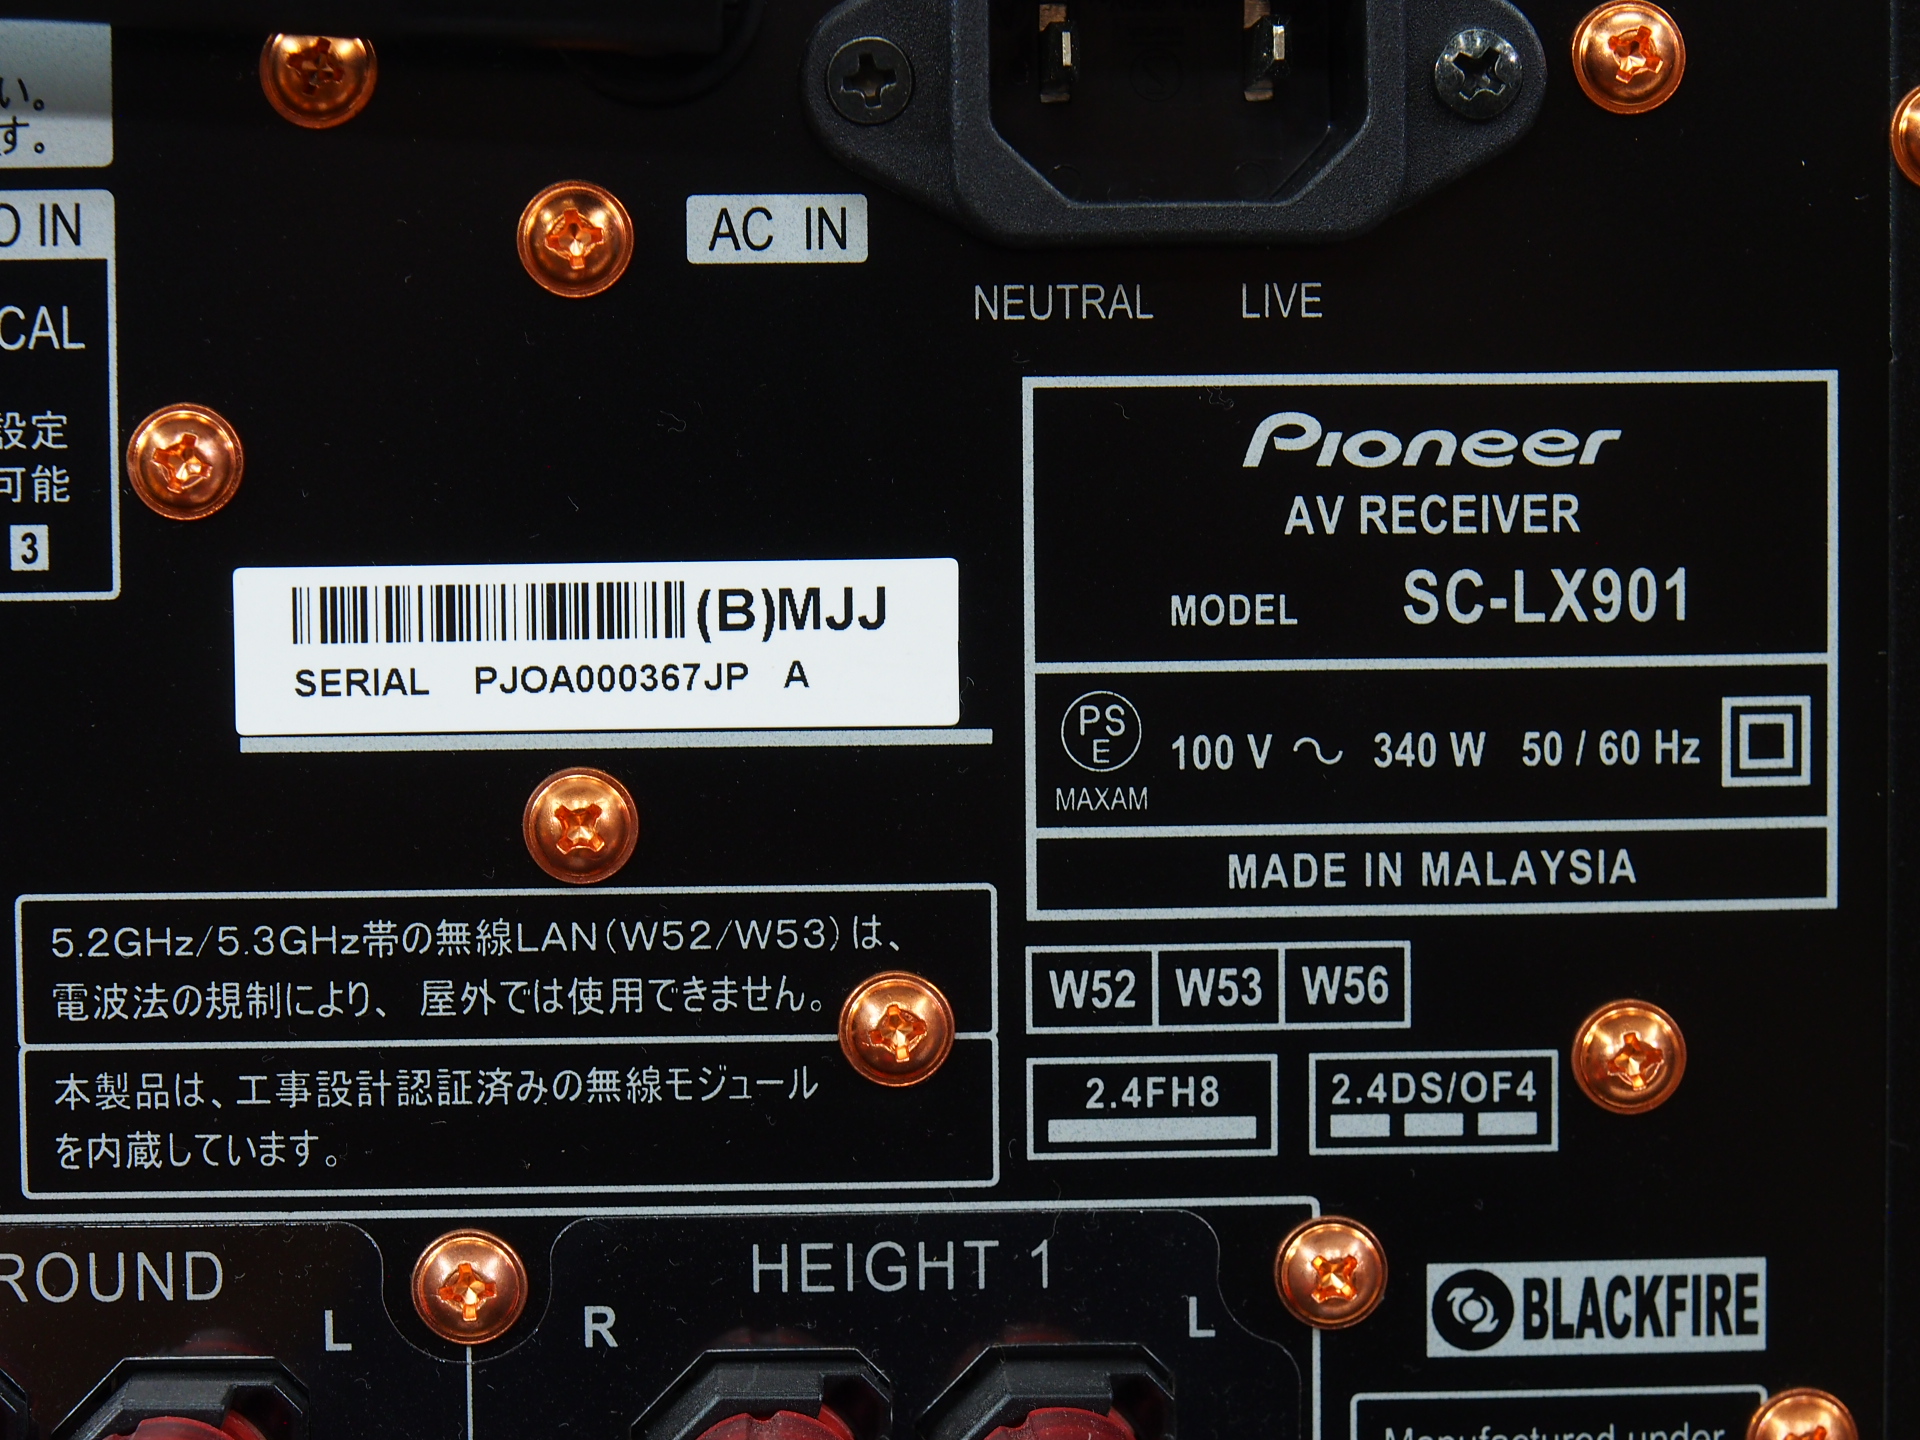 アバックWEB-SHOP / 【中古】Pioneer SC-LX901【コード01-09797】AVアンプ